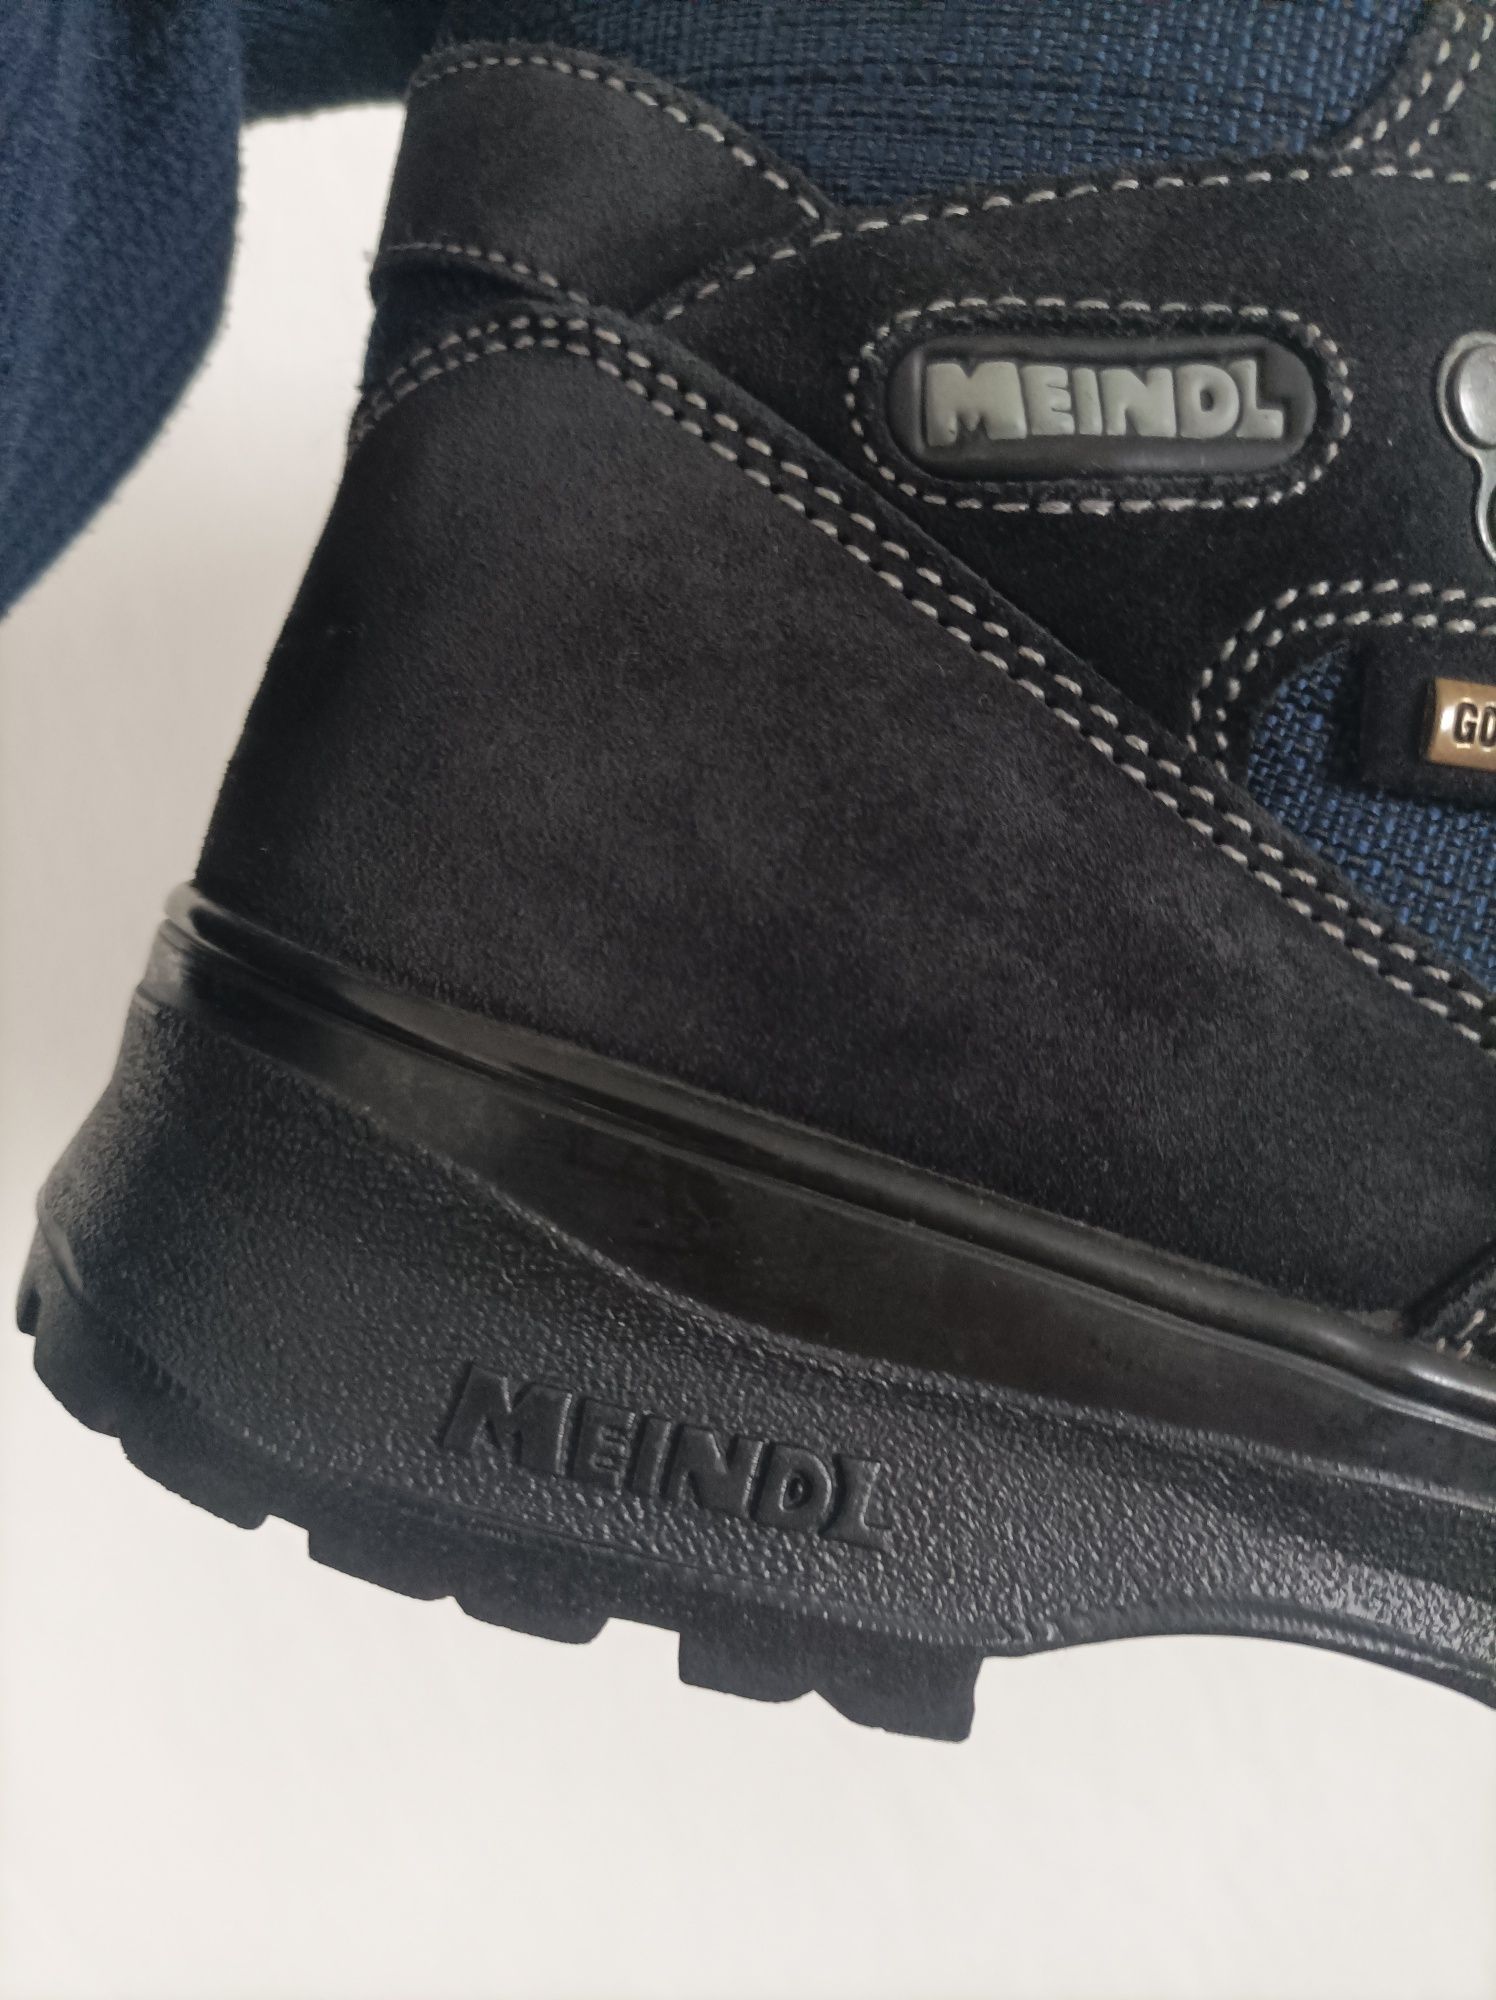 Зимние ботинки термо Meindl 25 см по стельке